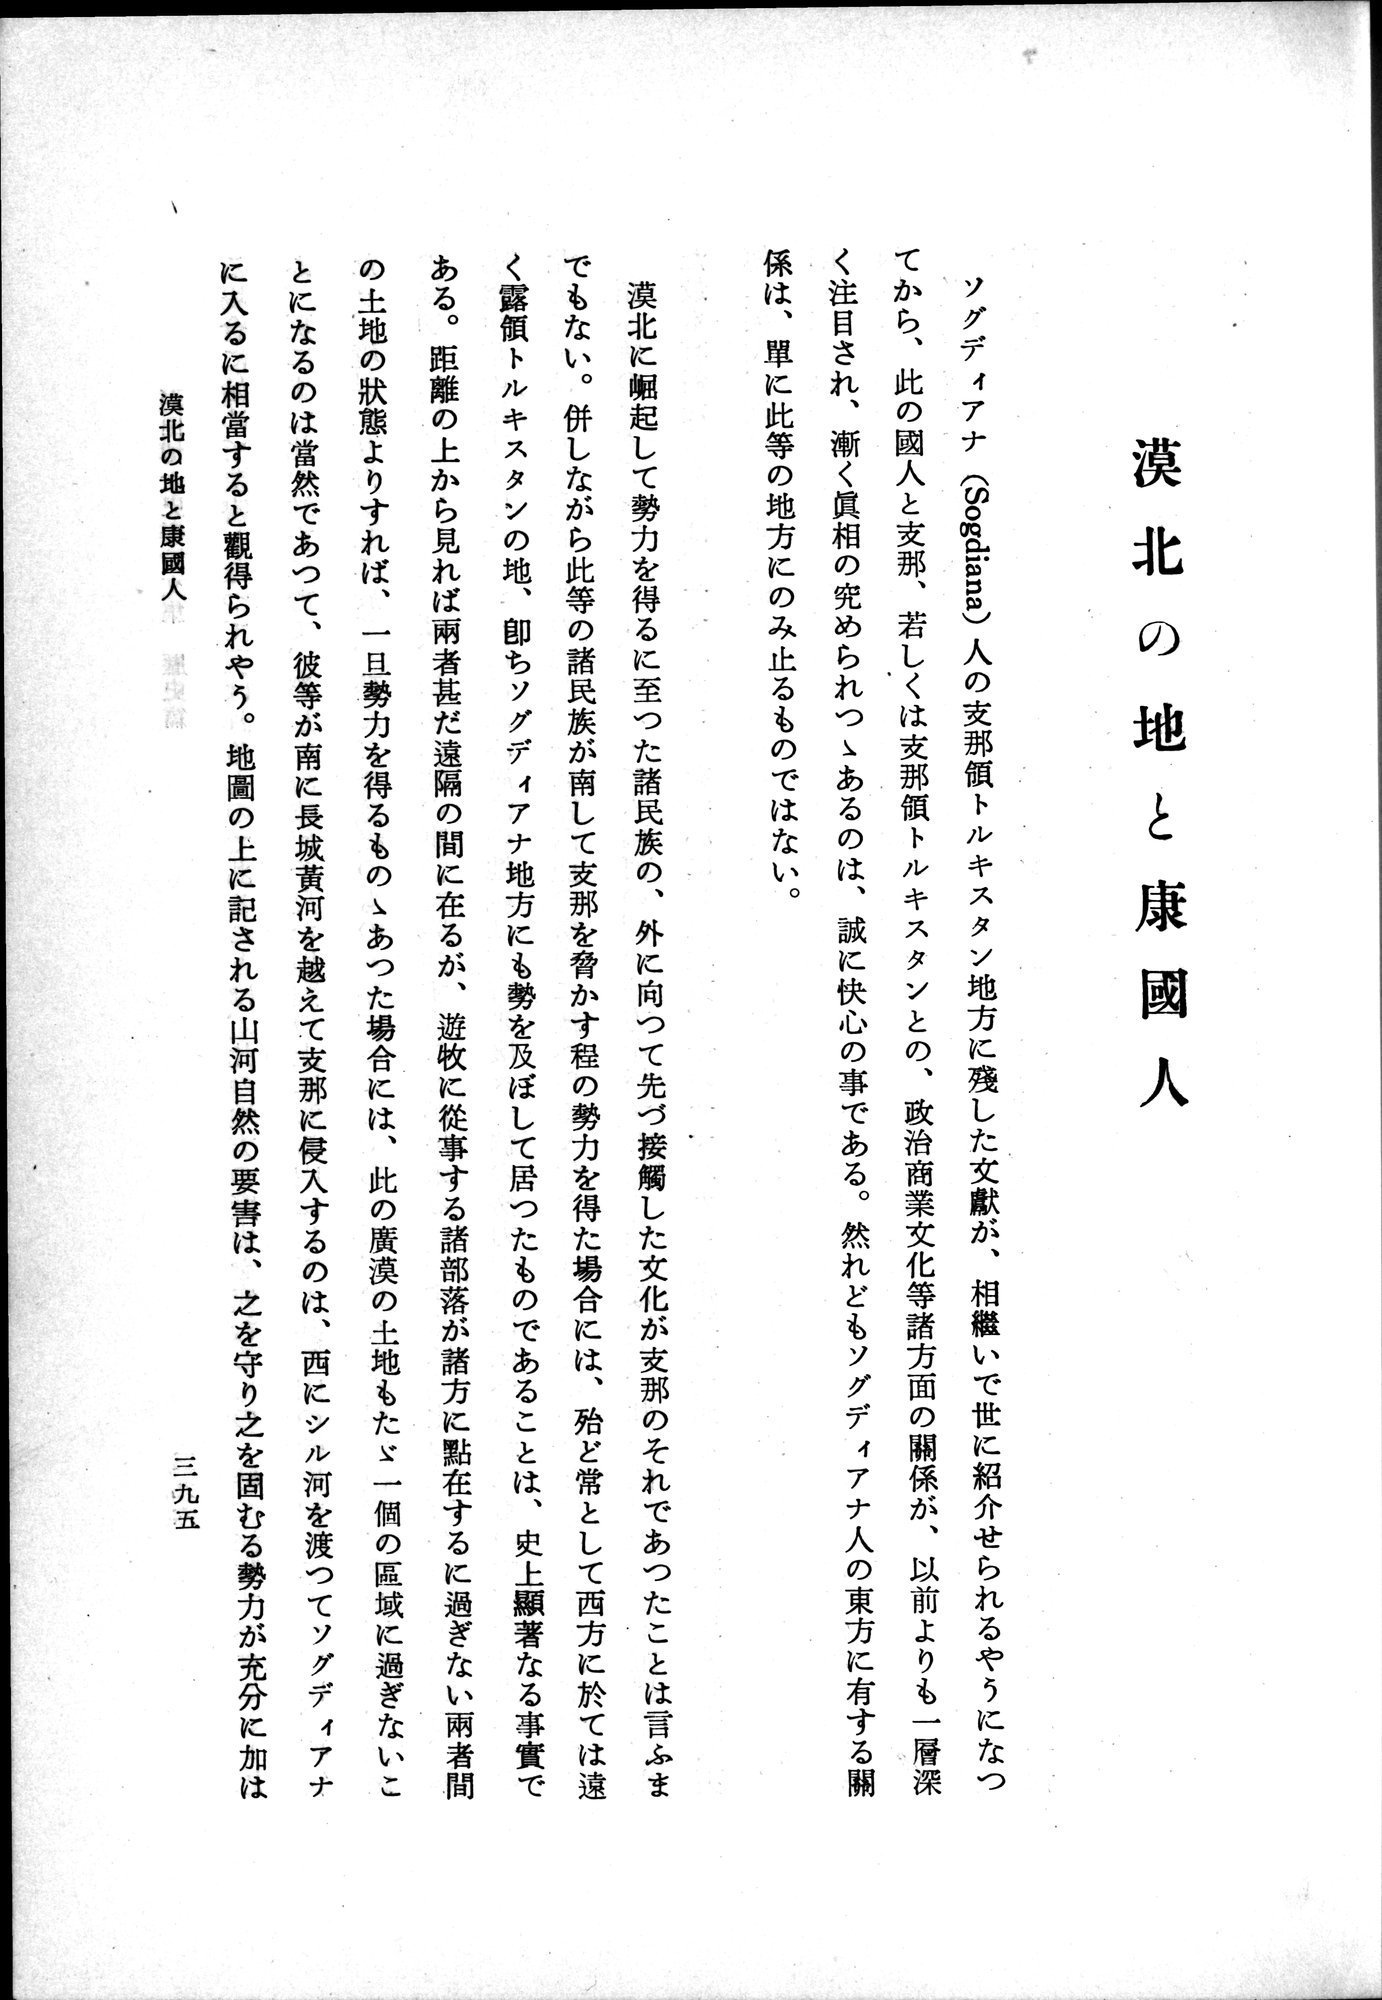 羽田博士史学論文集 : vol.1 / Page 433 (Grayscale High Resolution Image)